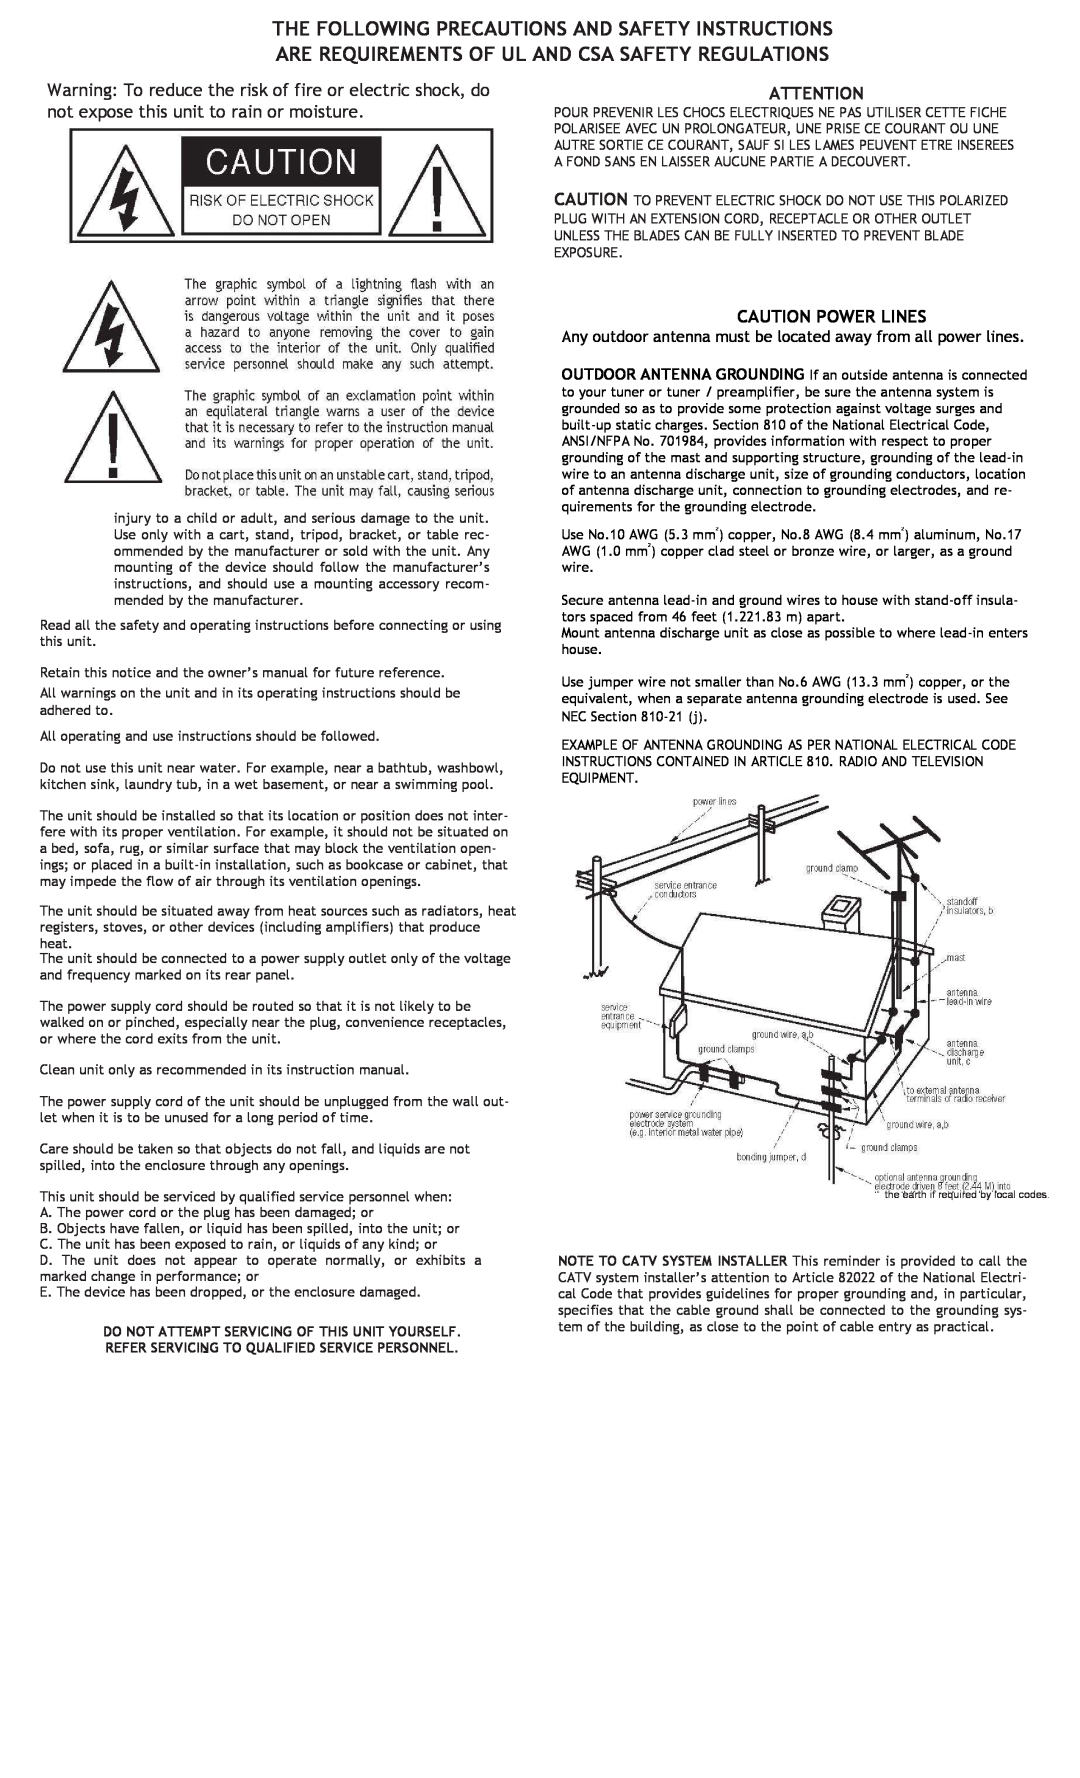 Adcom GFP-815 manual Caution Power Lines 